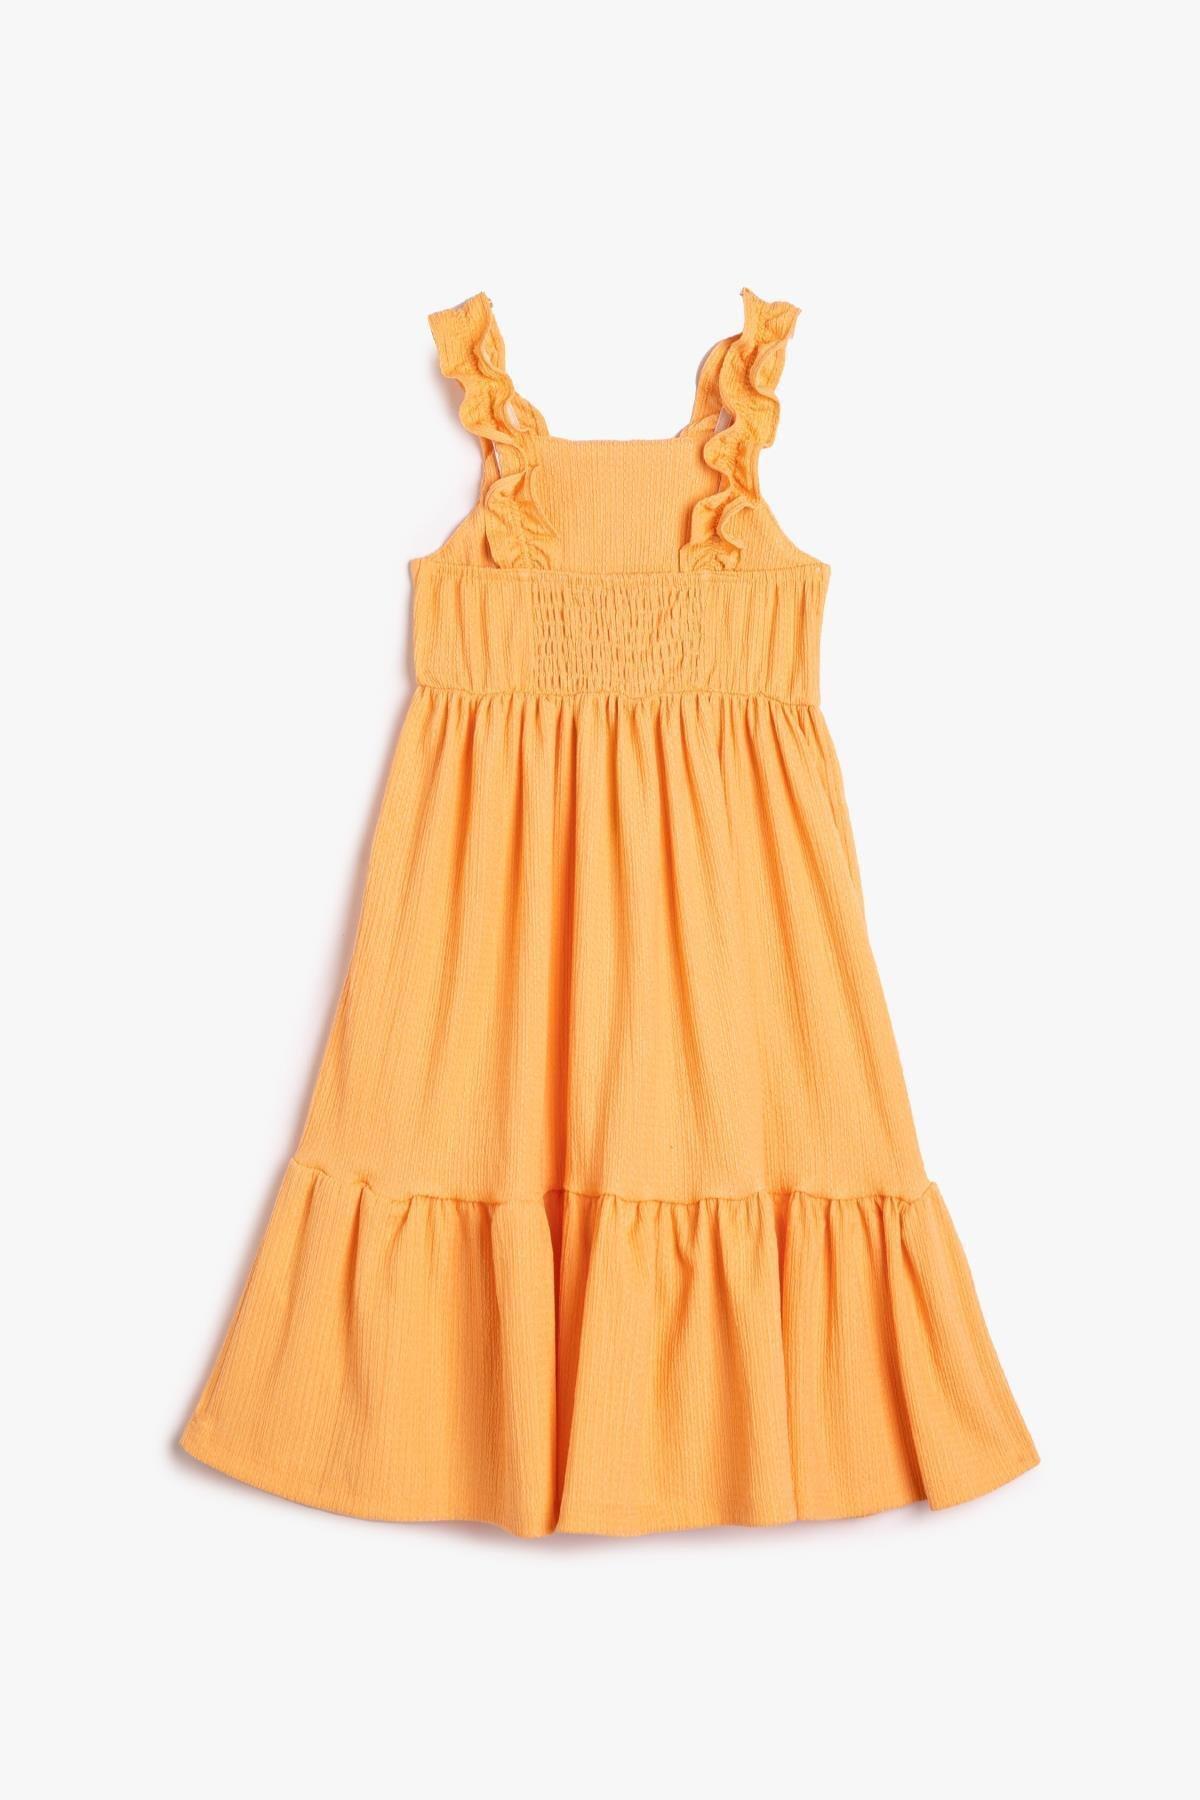 Koton - Orange Crew-Neck Dress, Kids Girls